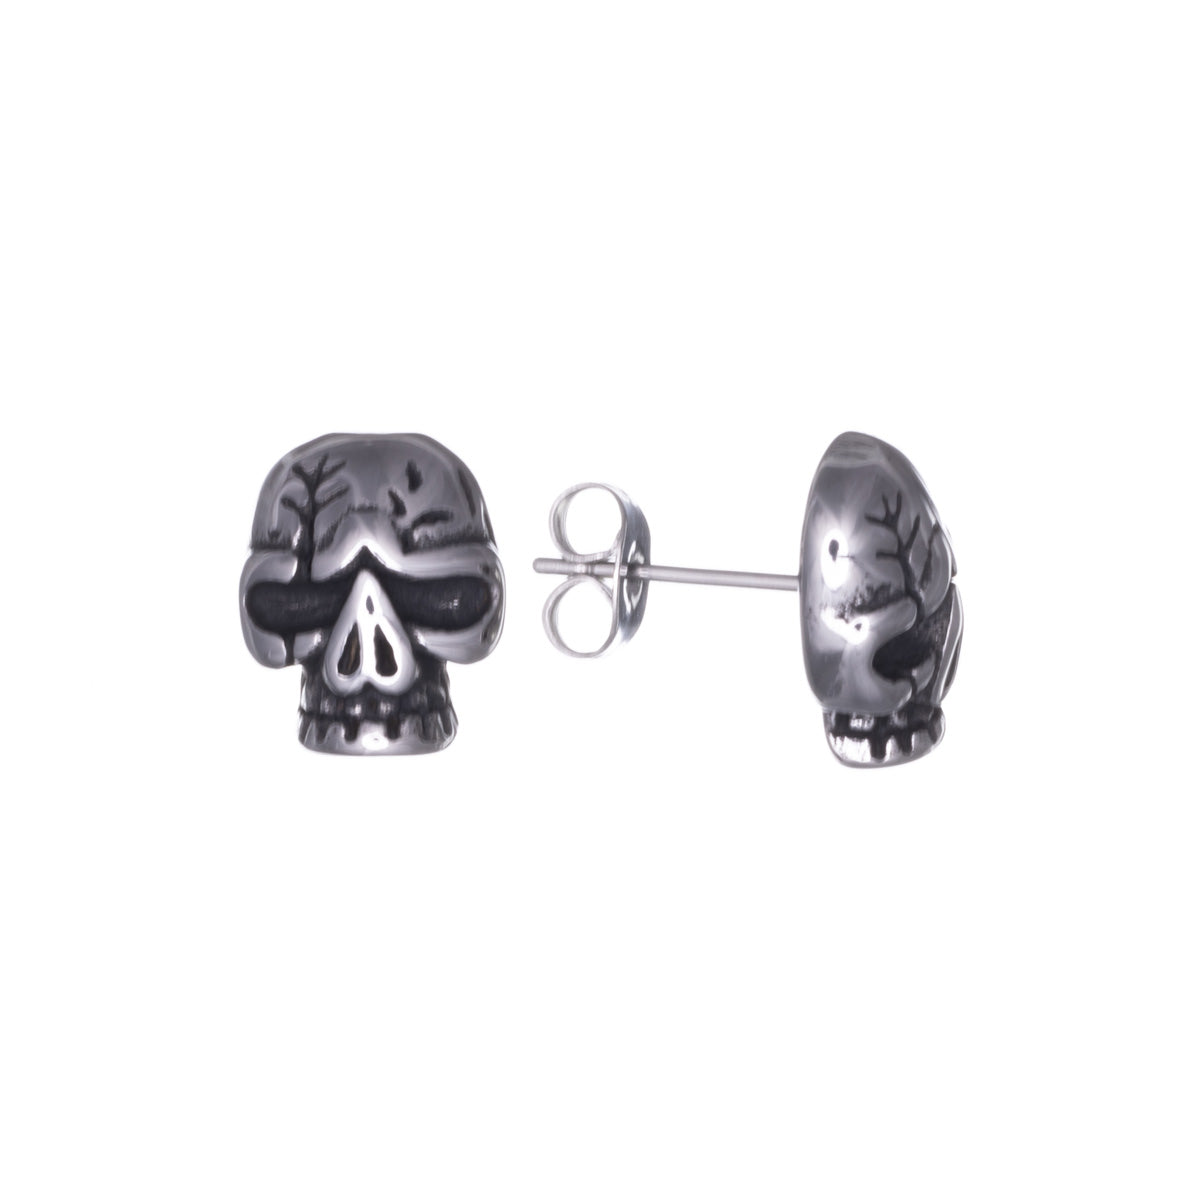 Skull earrings (Steel 316L)